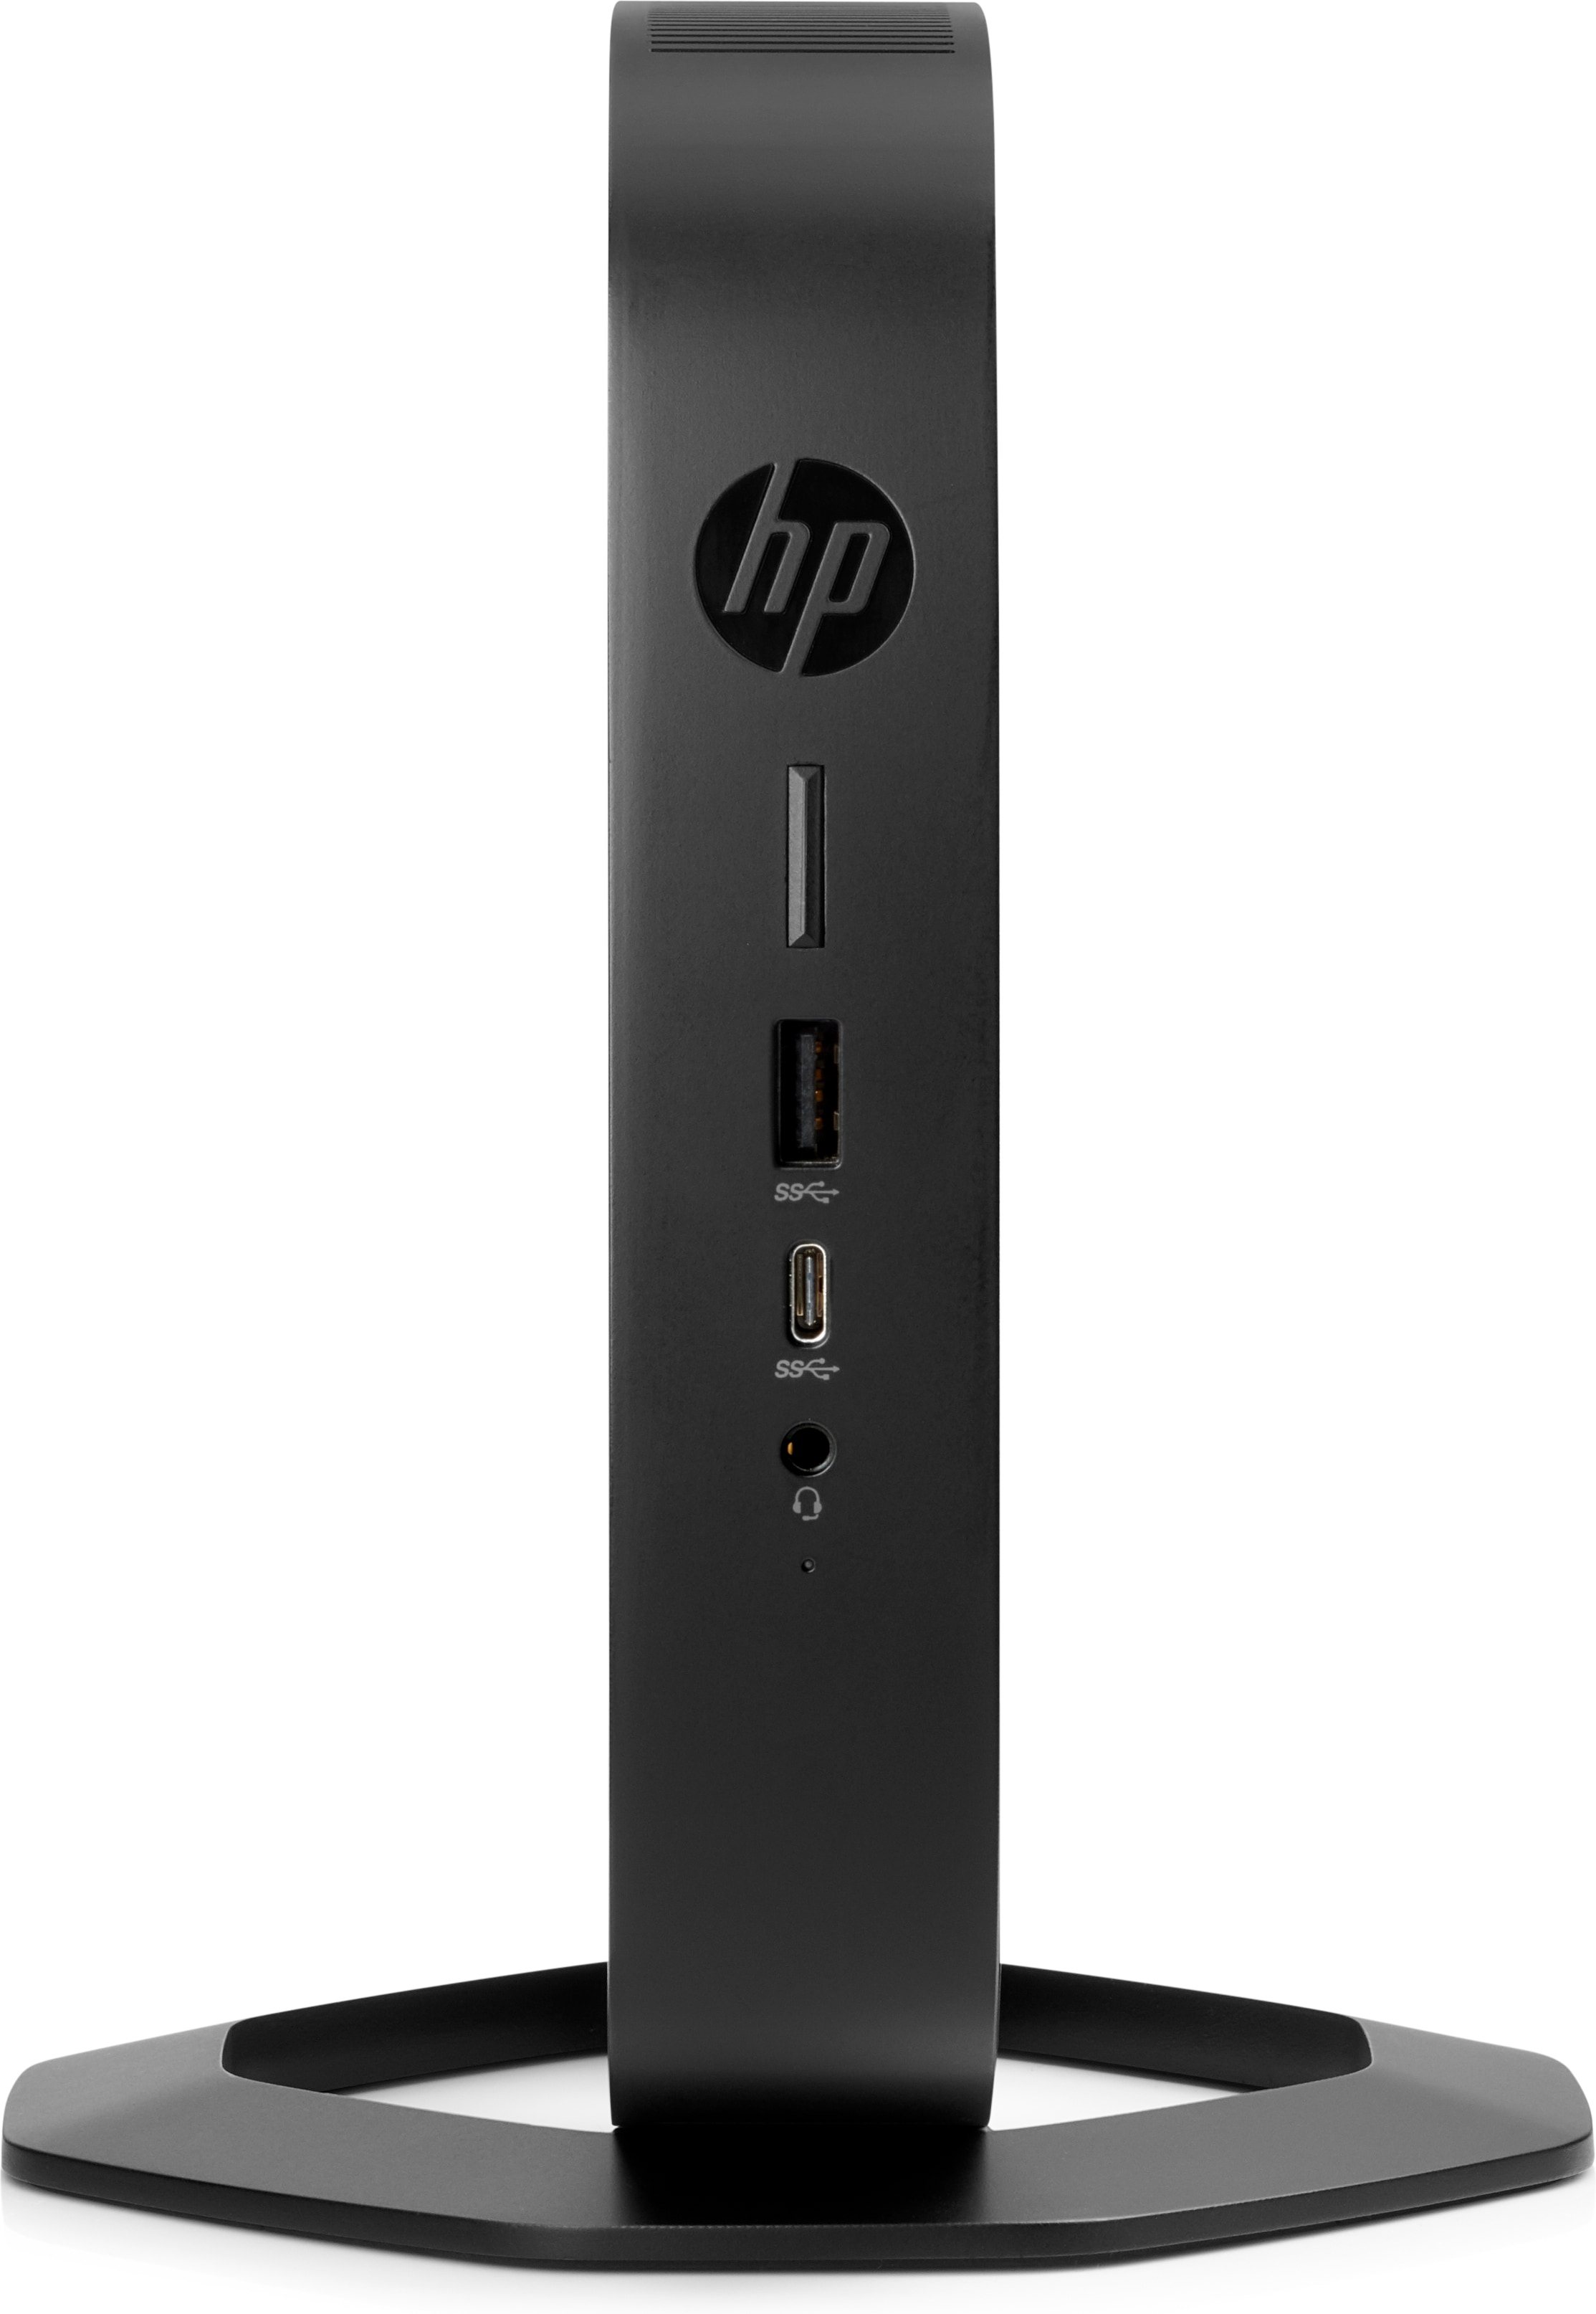 HP t540 - Thin Client - USFF - 1 x Ryzen Embedded R1305G / 1.5 GHz